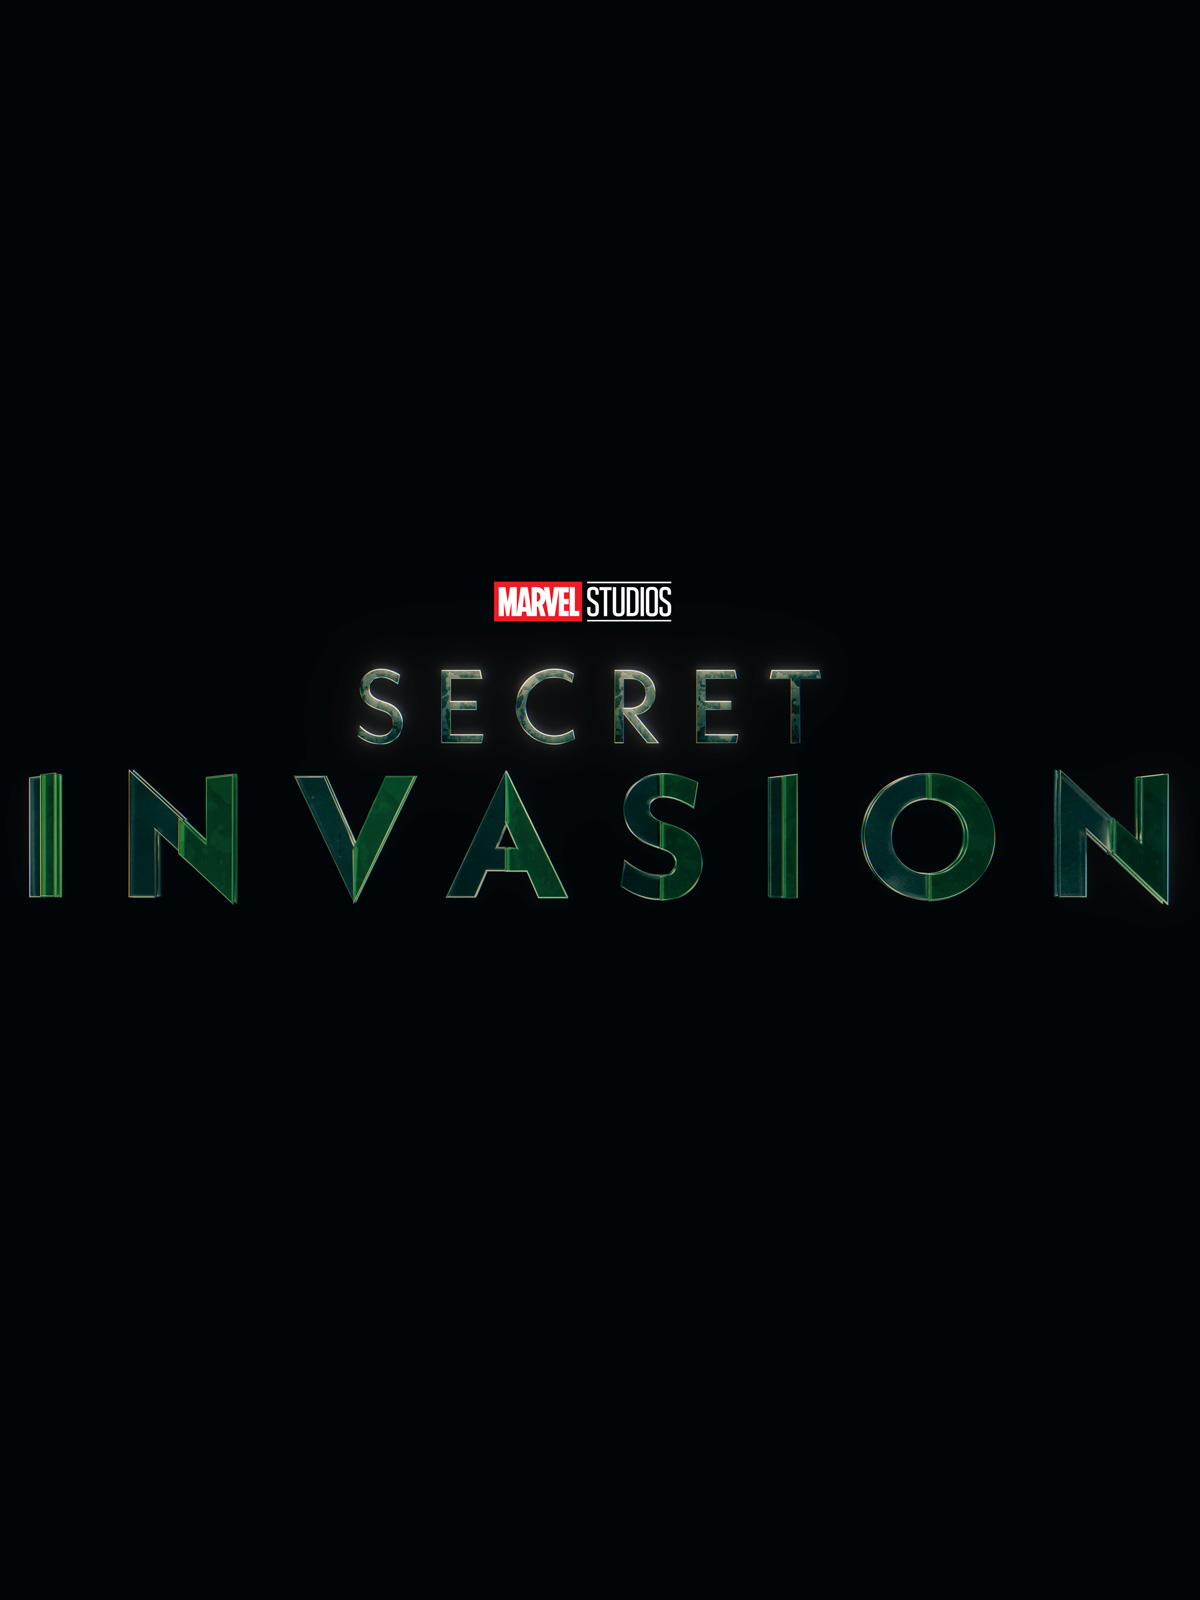 Marvel Studios’ Secret Invasion